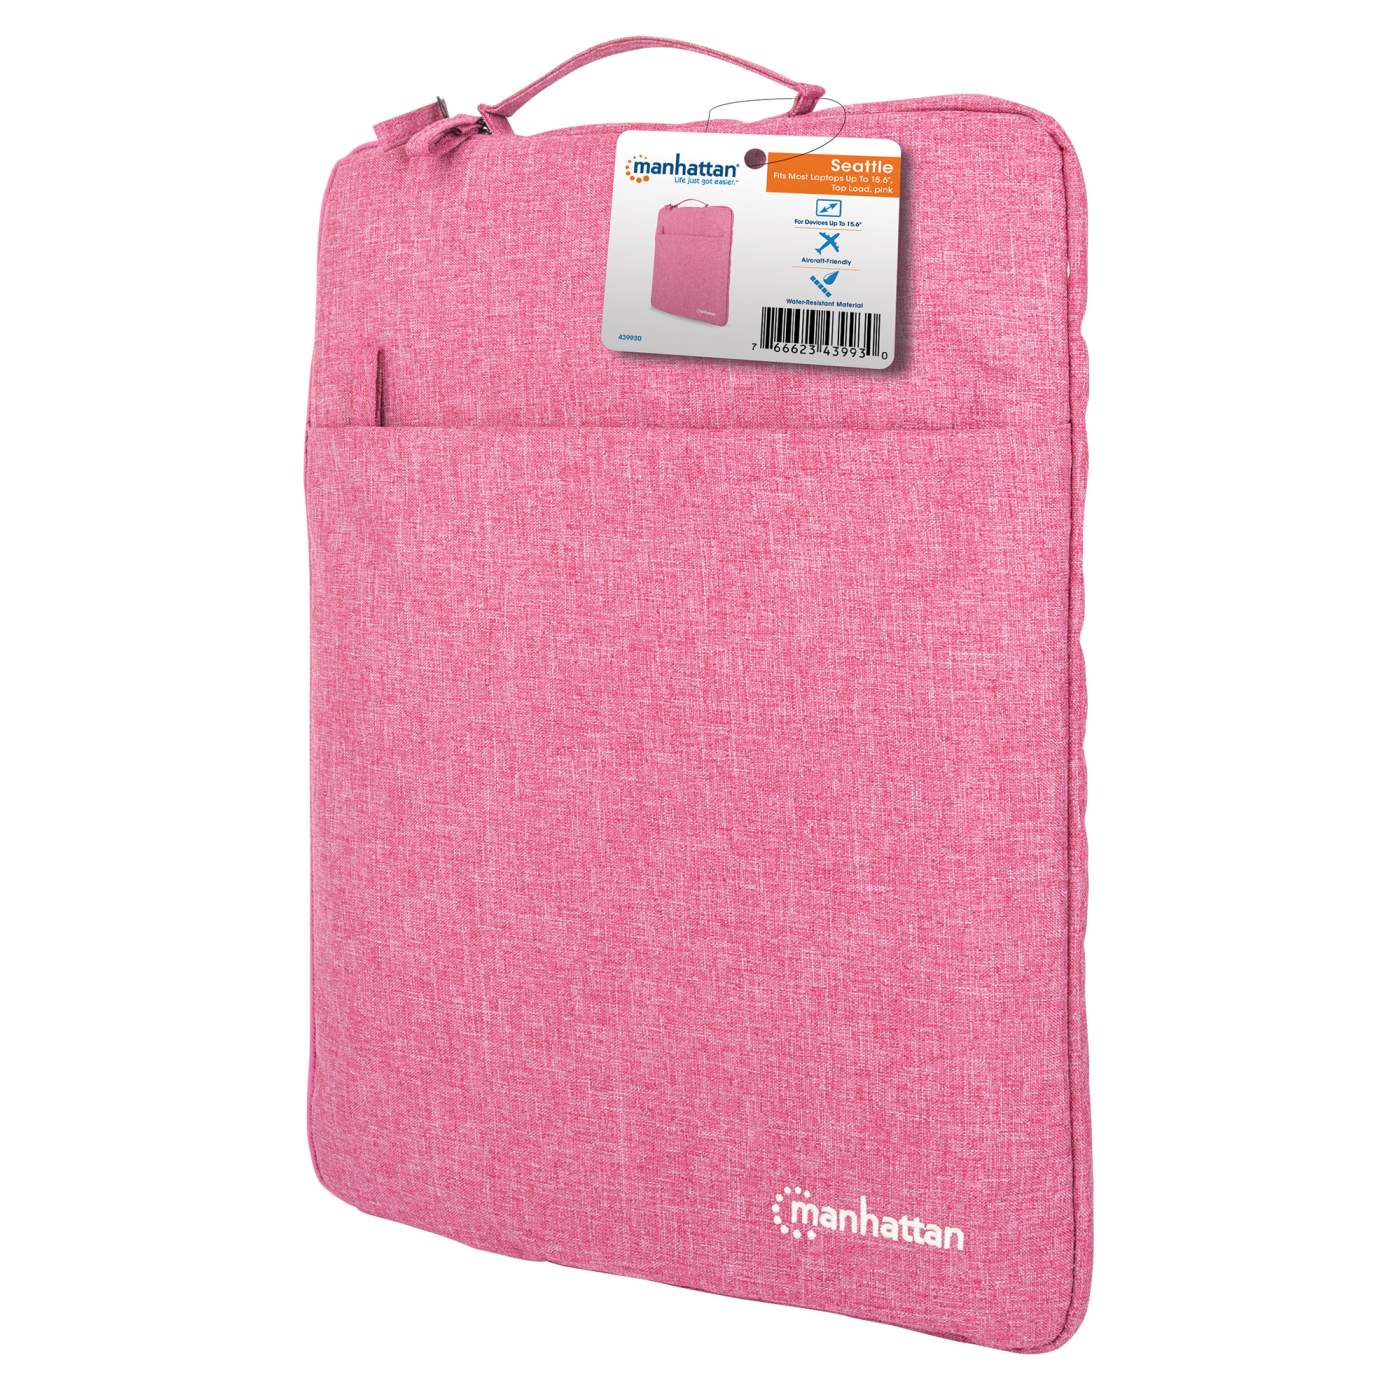 Seattle Notebook Sleeve 15.6" Packaging Image 2